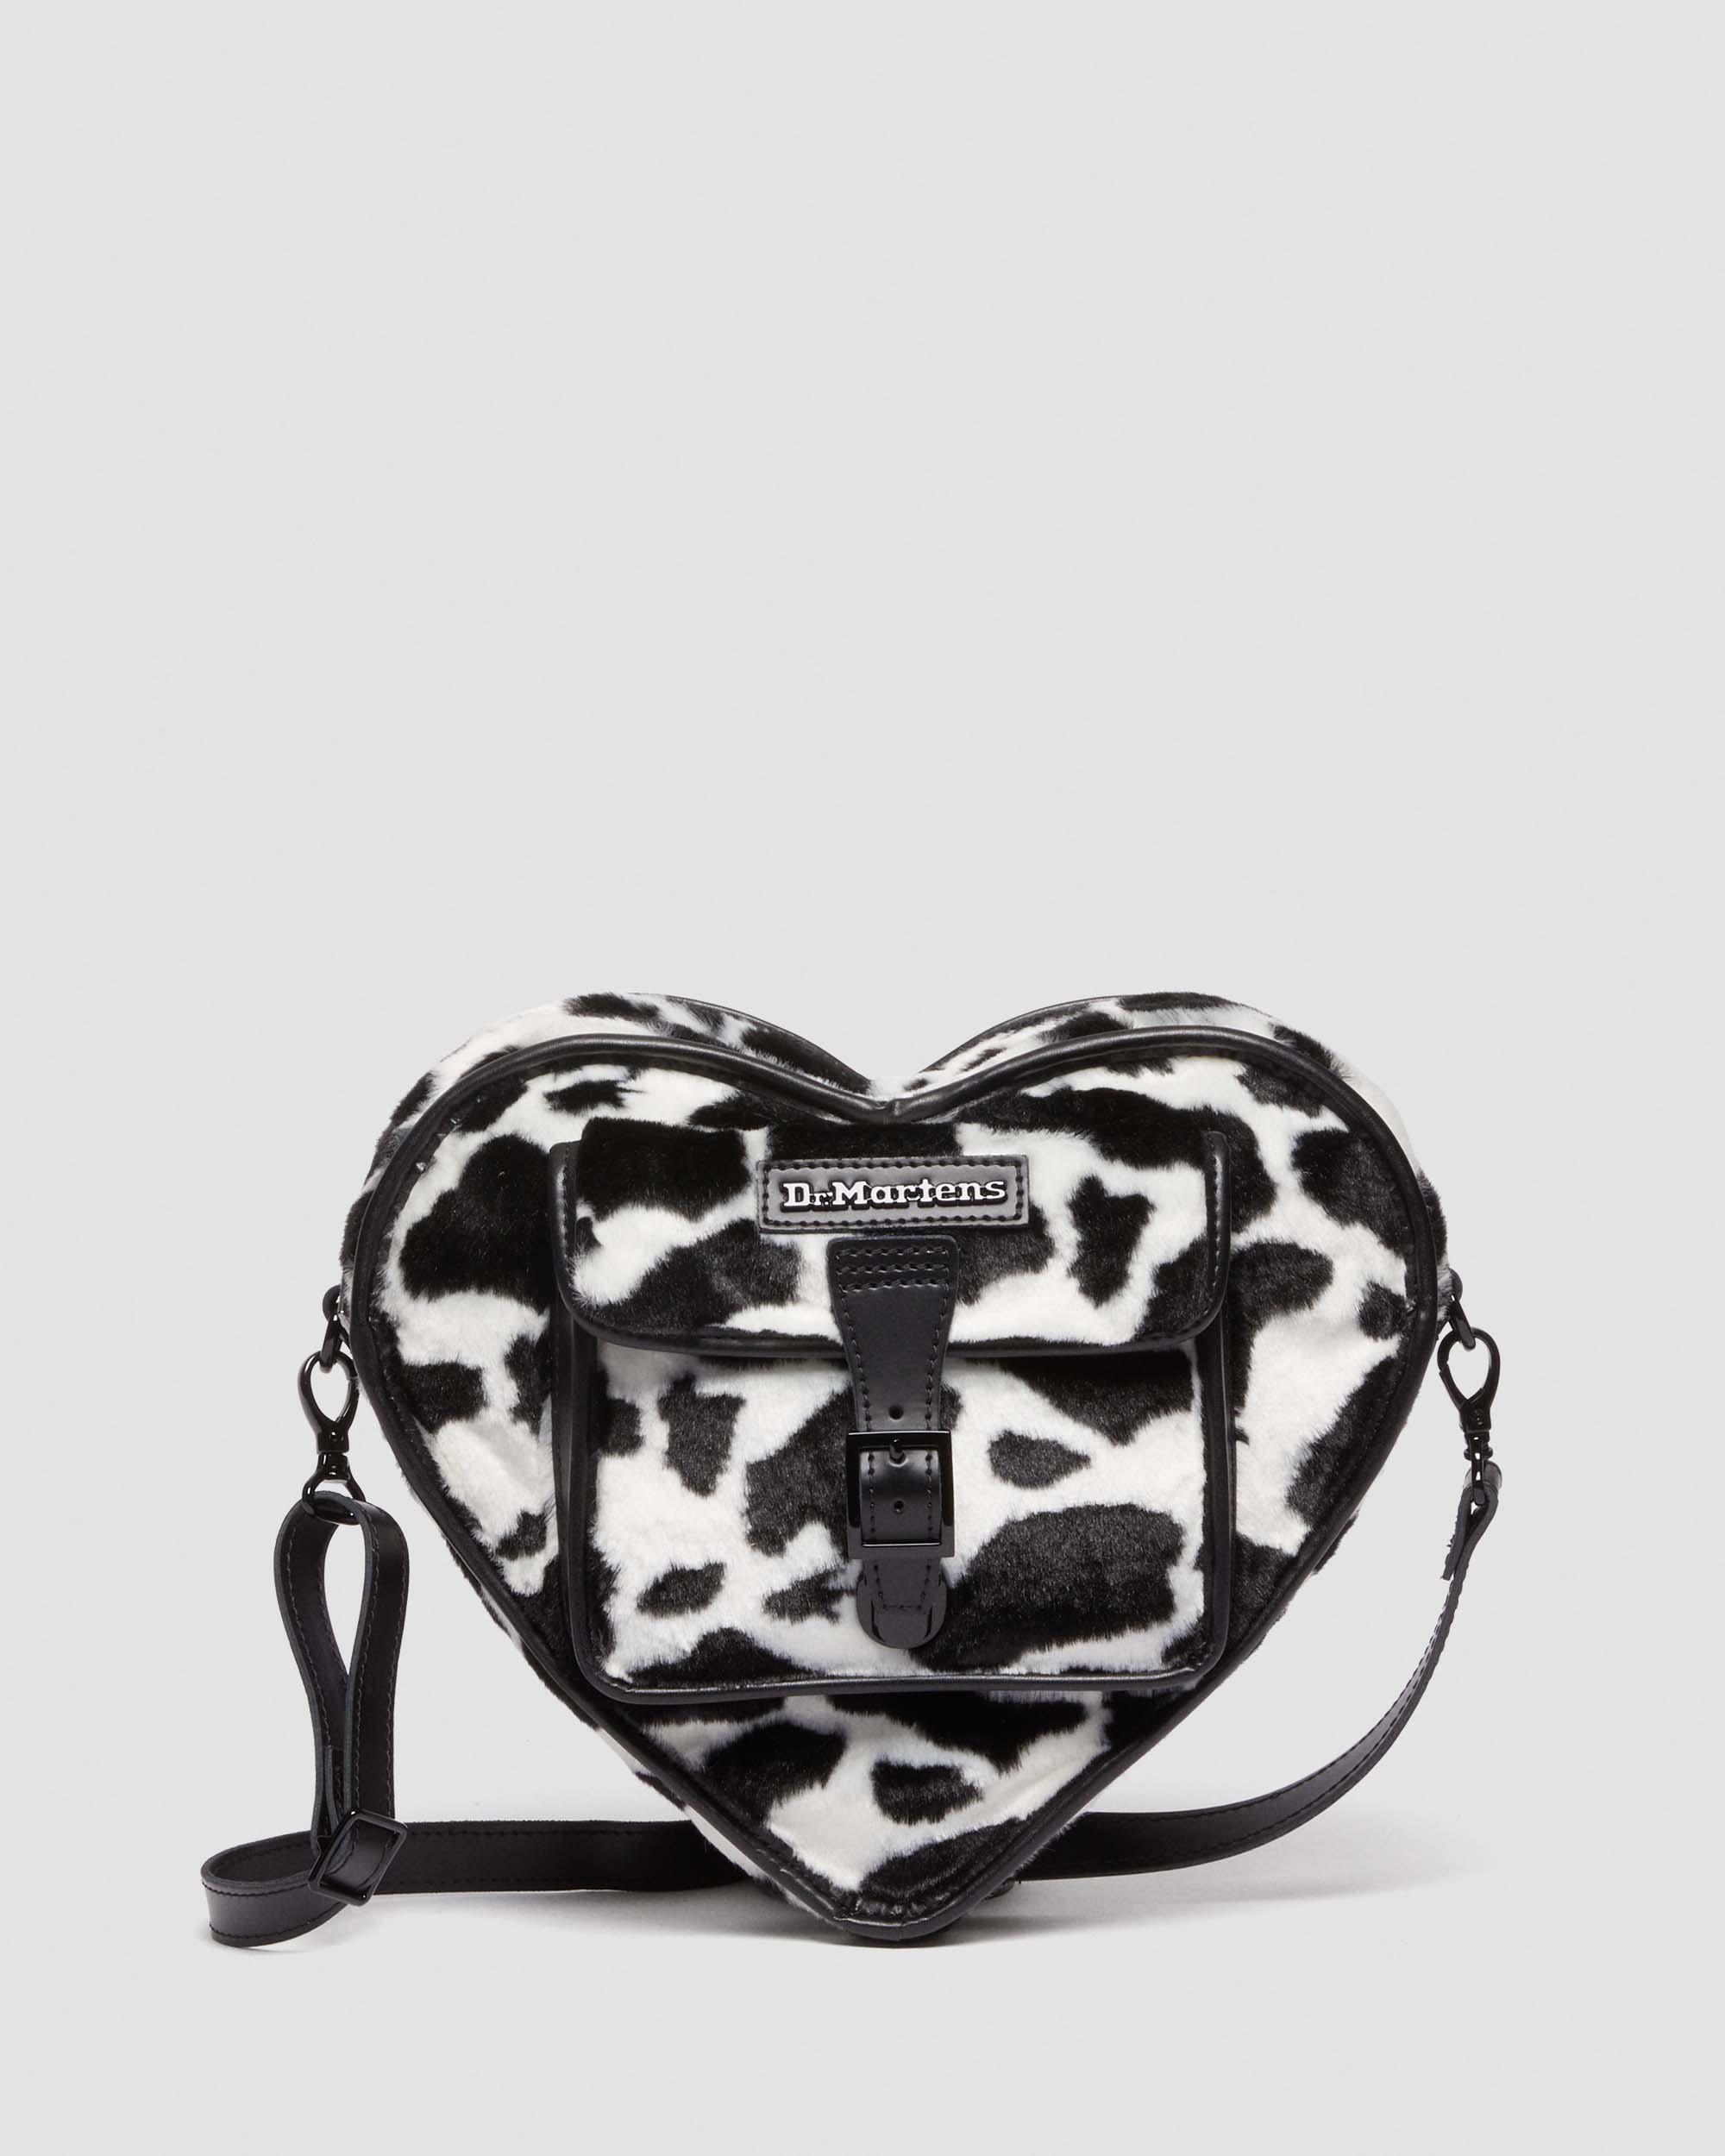 Black Dr Martens Heart Backpack Bags